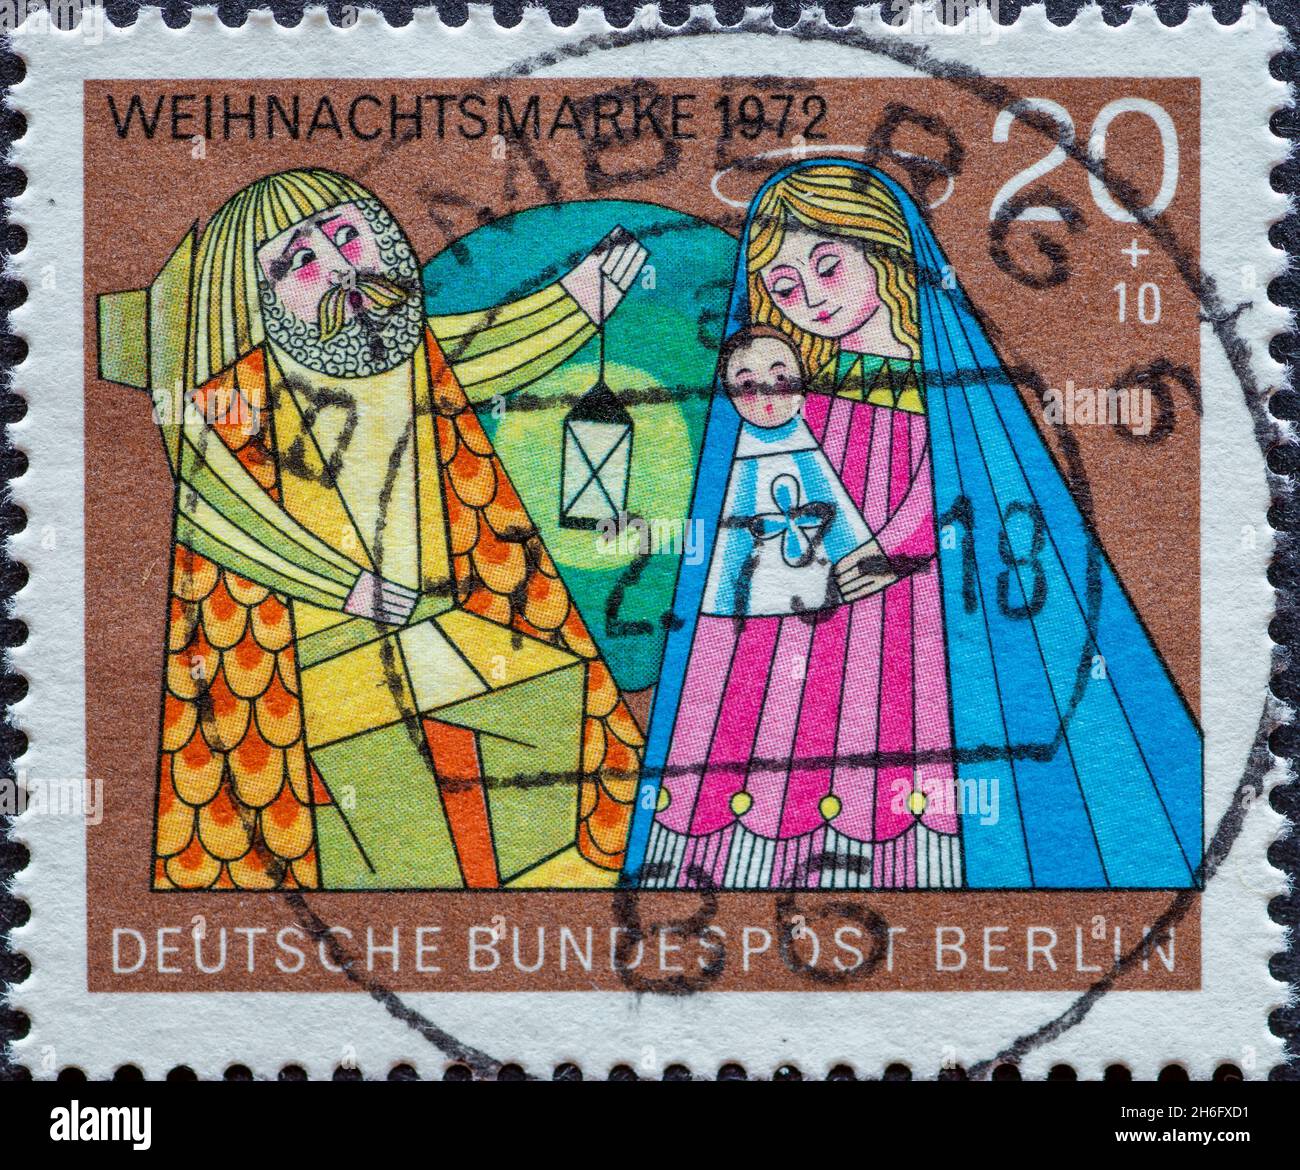 ALLEMAGNE, Berlin - VERS 1972: Timbre-poste d'Allemagne, Berlin montrant un timbre-poste de charité de Noël tiré de 1972 peinture de la « Sainte famille » Banque D'Images